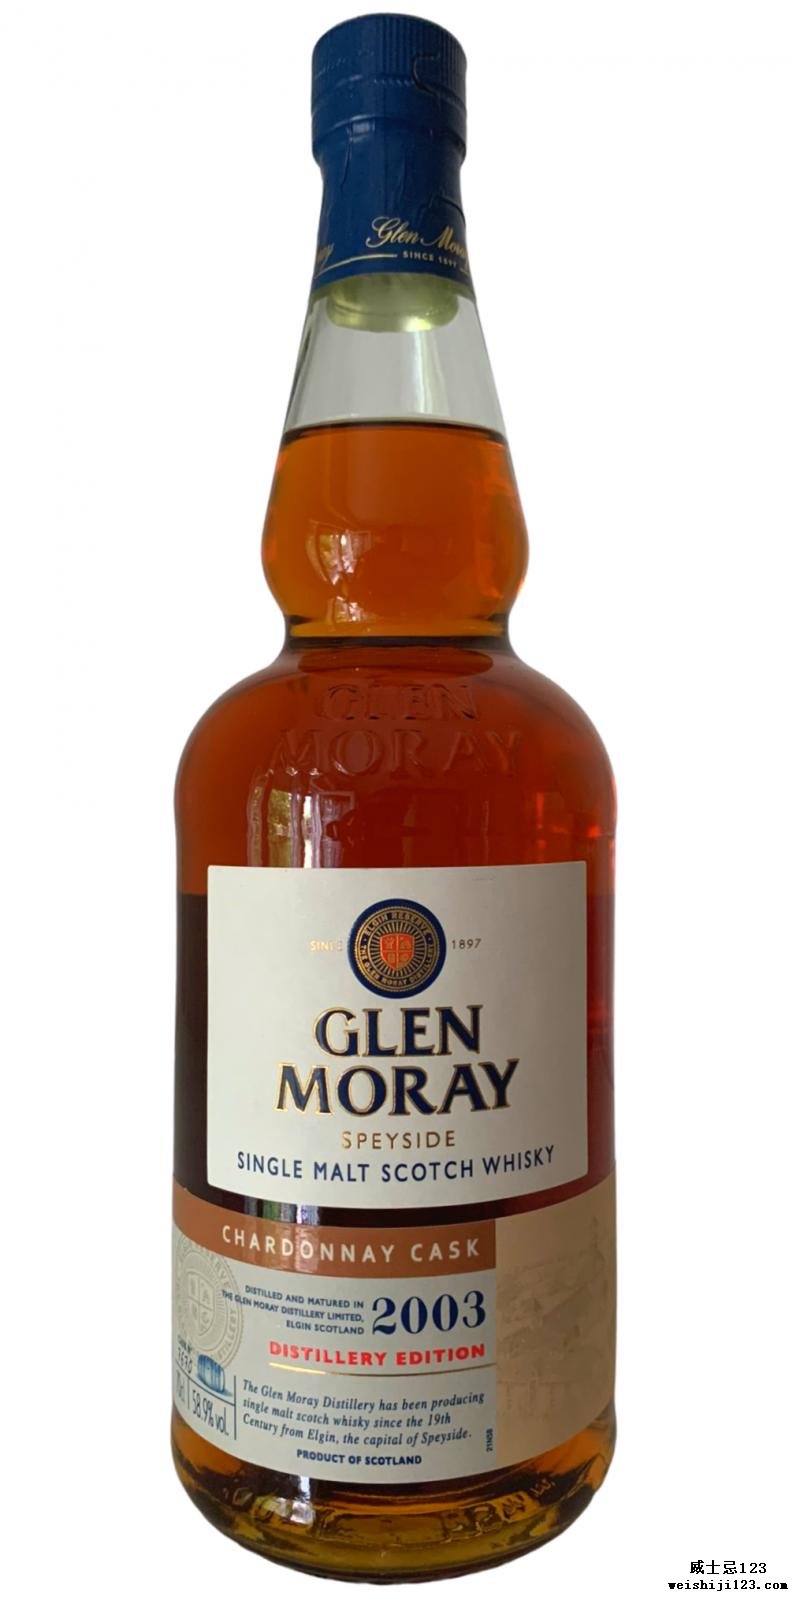 Glen Moray 2003 Chardonnay Cask